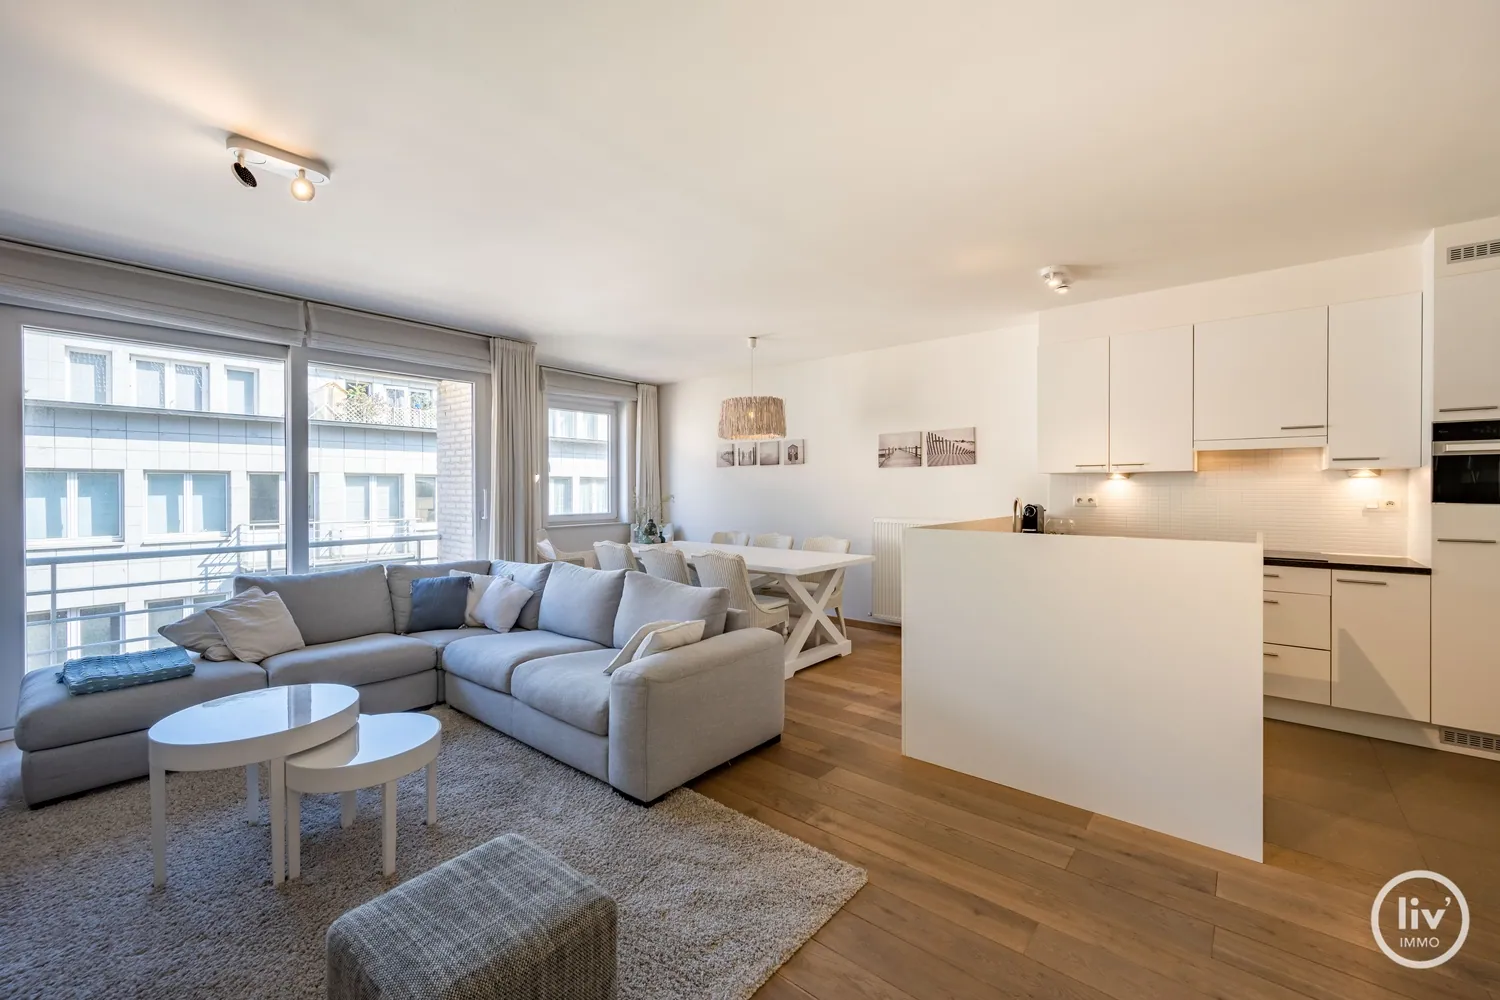 Appartement récent avec 2 chambres à coucher, très bien situé au Bayauxlaan à Knokke.